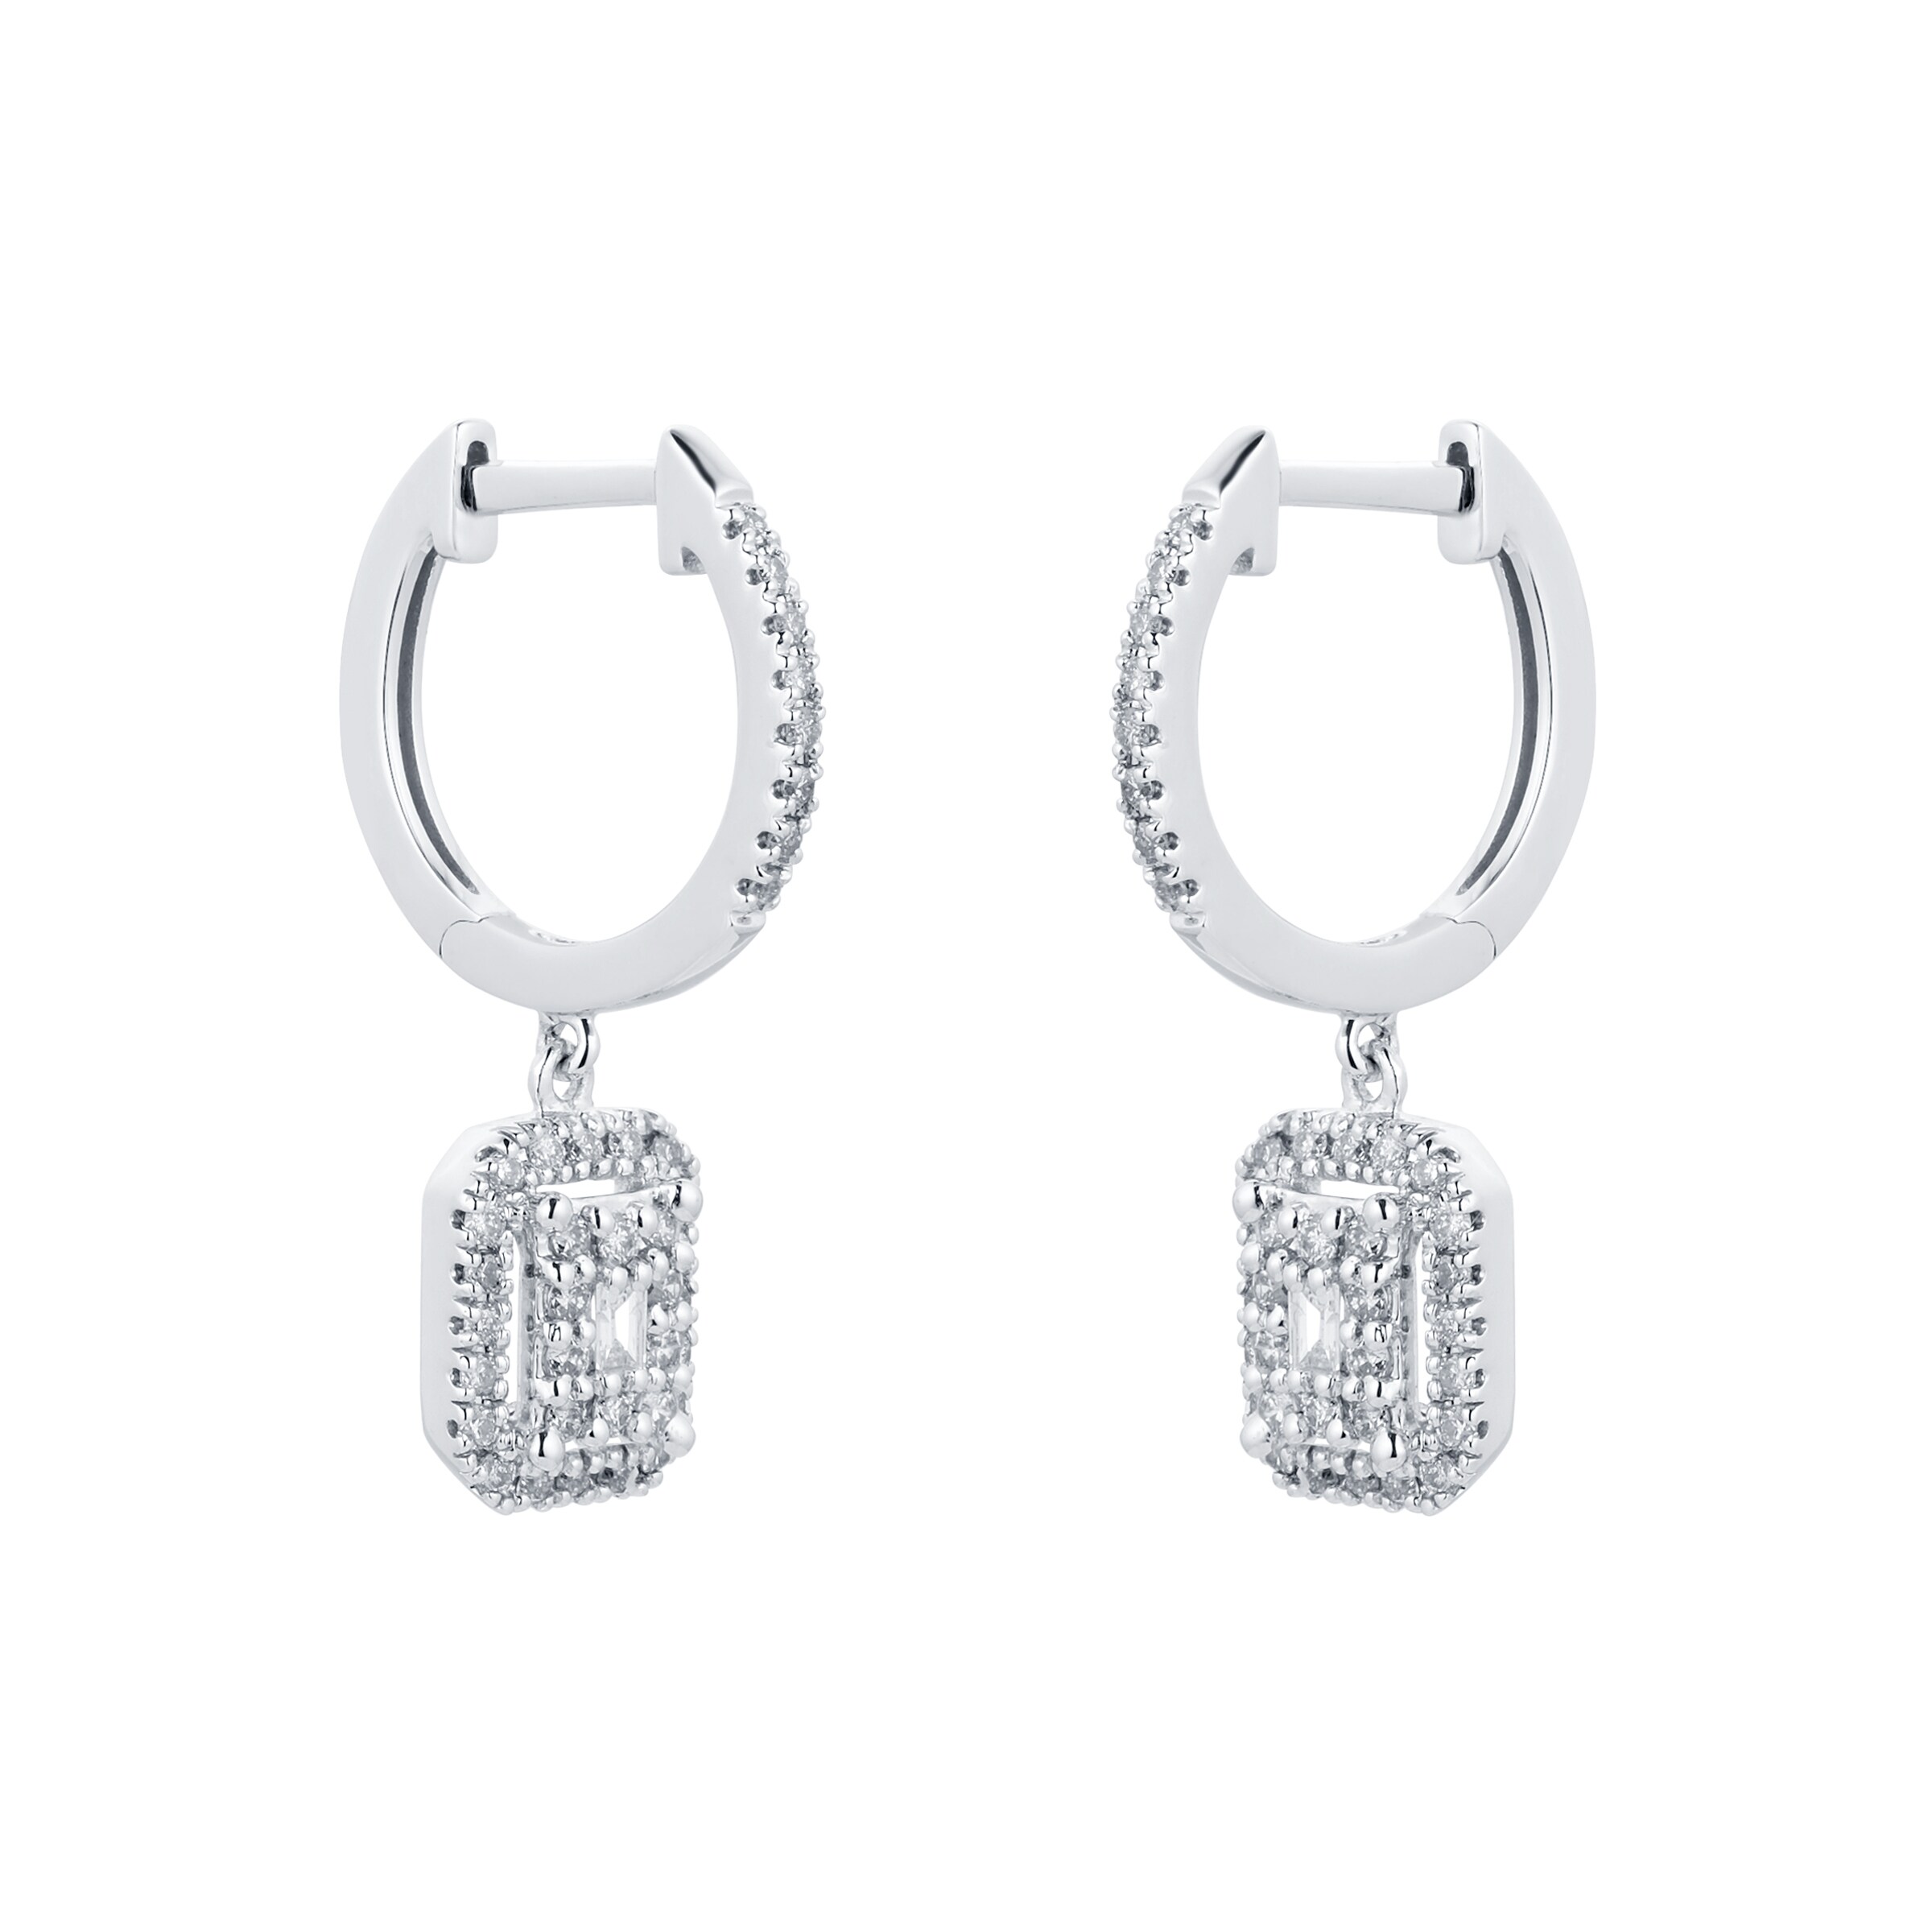 Buy Daisy Super Star Stud Earrings  Silver Online in UK